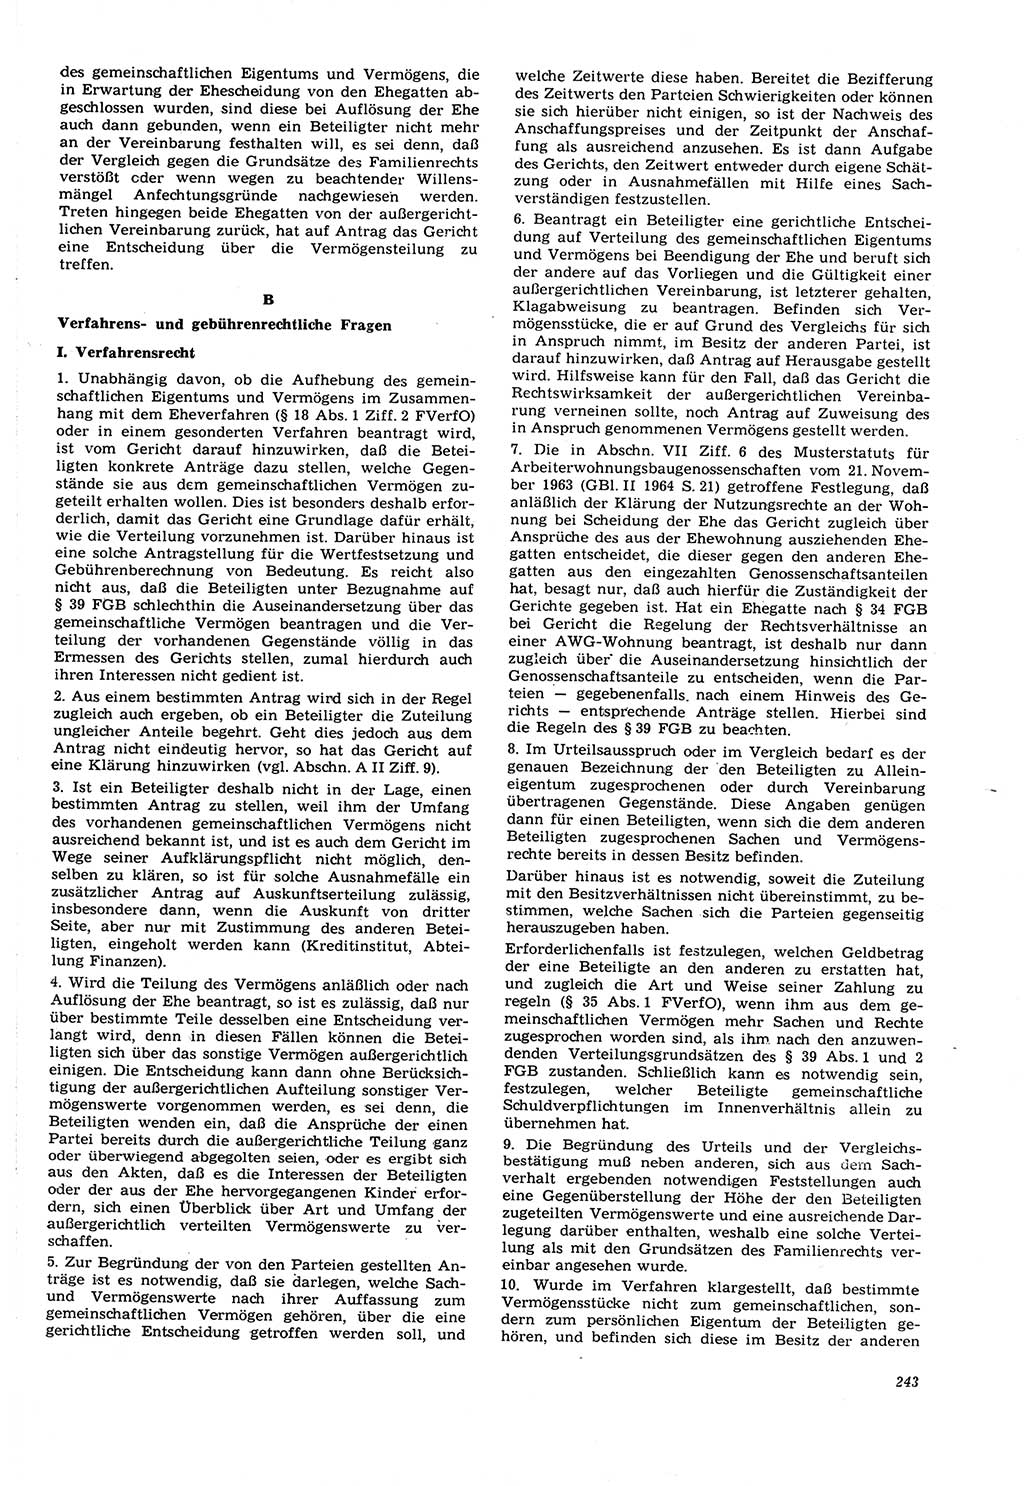 Neue Justiz (NJ), Zeitschrift für Recht und Rechtswissenschaft [Deutsche Demokratische Republik (DDR)], 21. Jahrgang 1967, Seite 243 (NJ DDR 1967, S. 243)